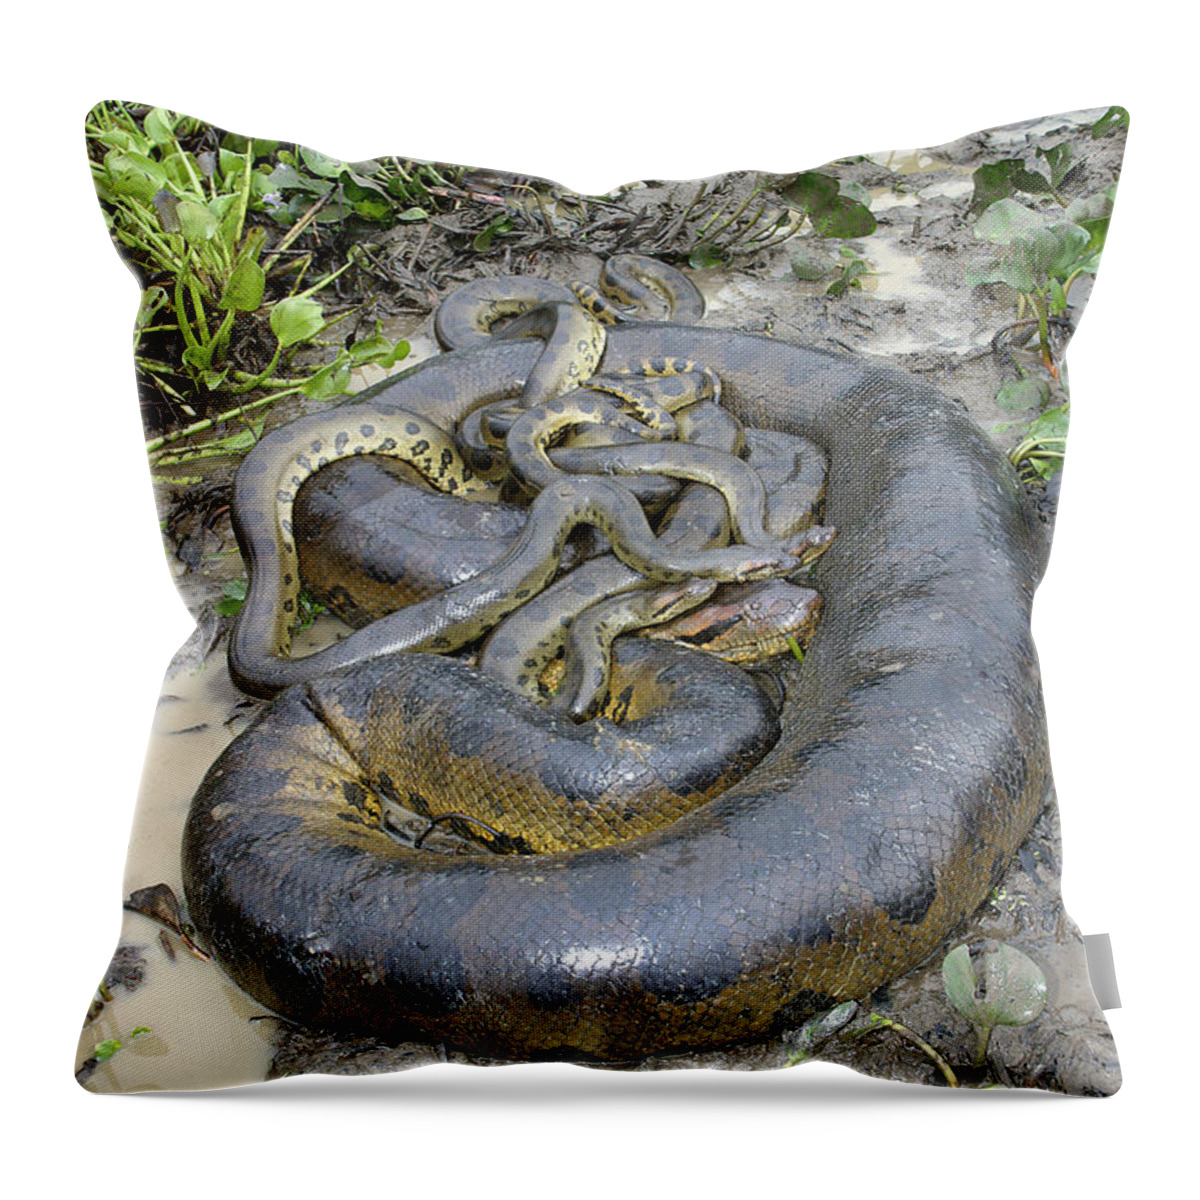 Green Anaconda Throw Pillow featuring the photograph Green Anacondas by M. Watson